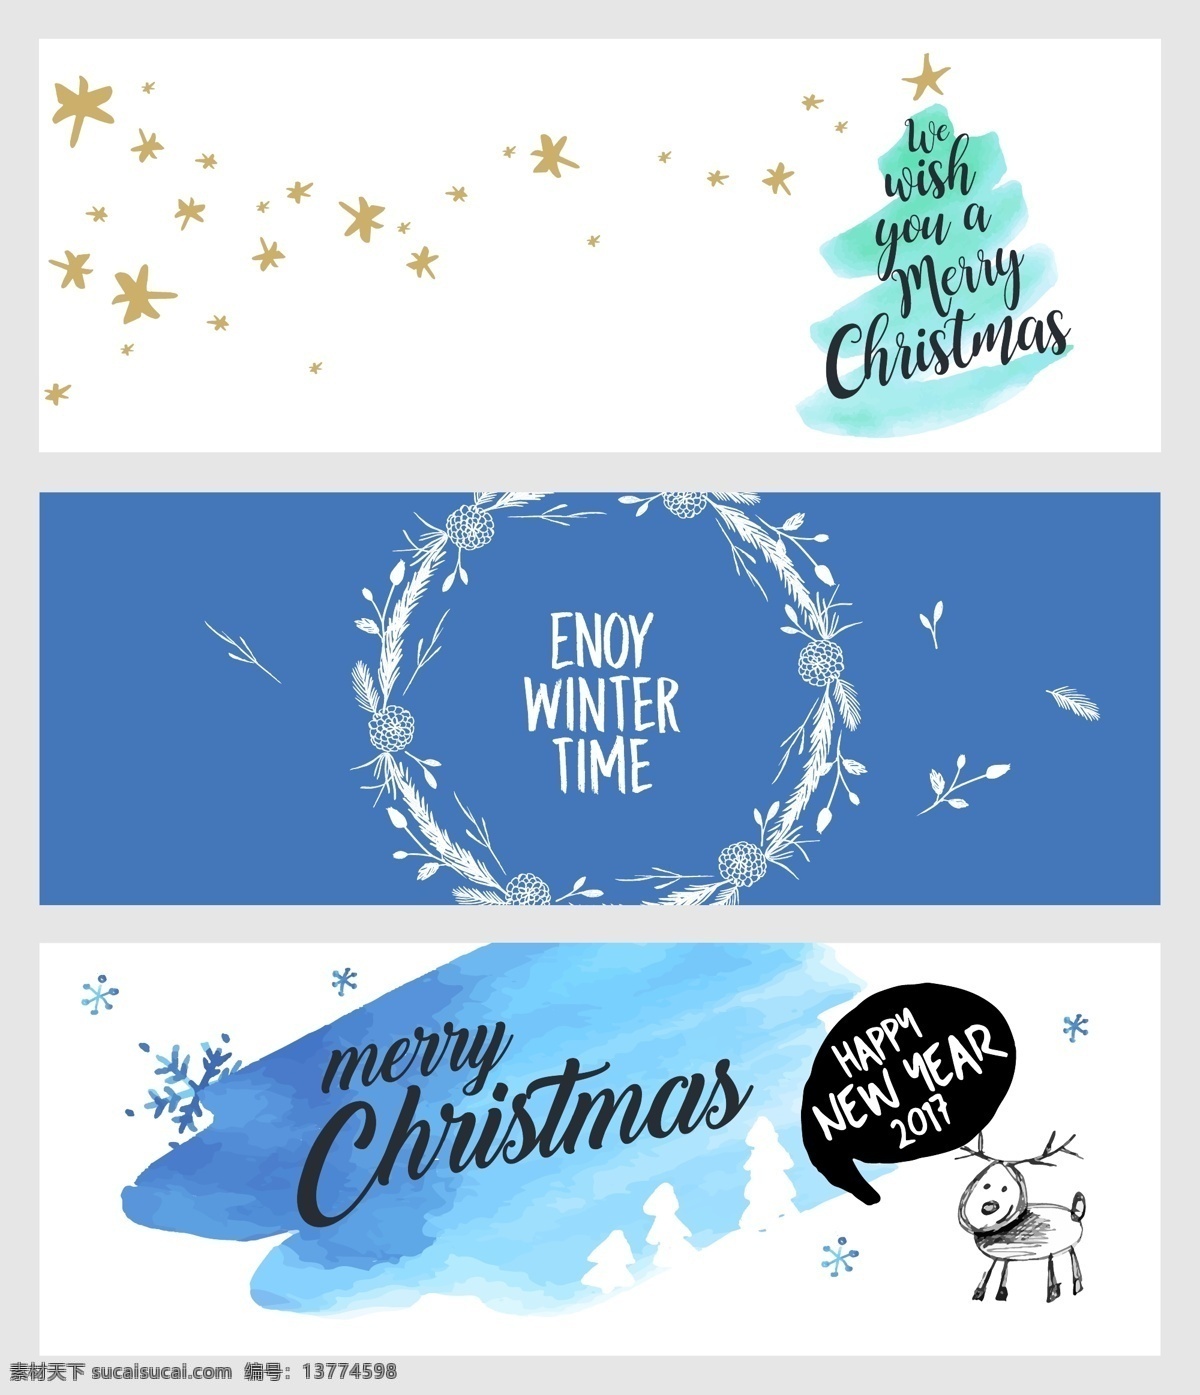 节日 庆祝 圣诞 新年 横幅 海报 矢量 蓝色 水彩 花环 树环 简约 背景 下雪 卡通 手绘 广告